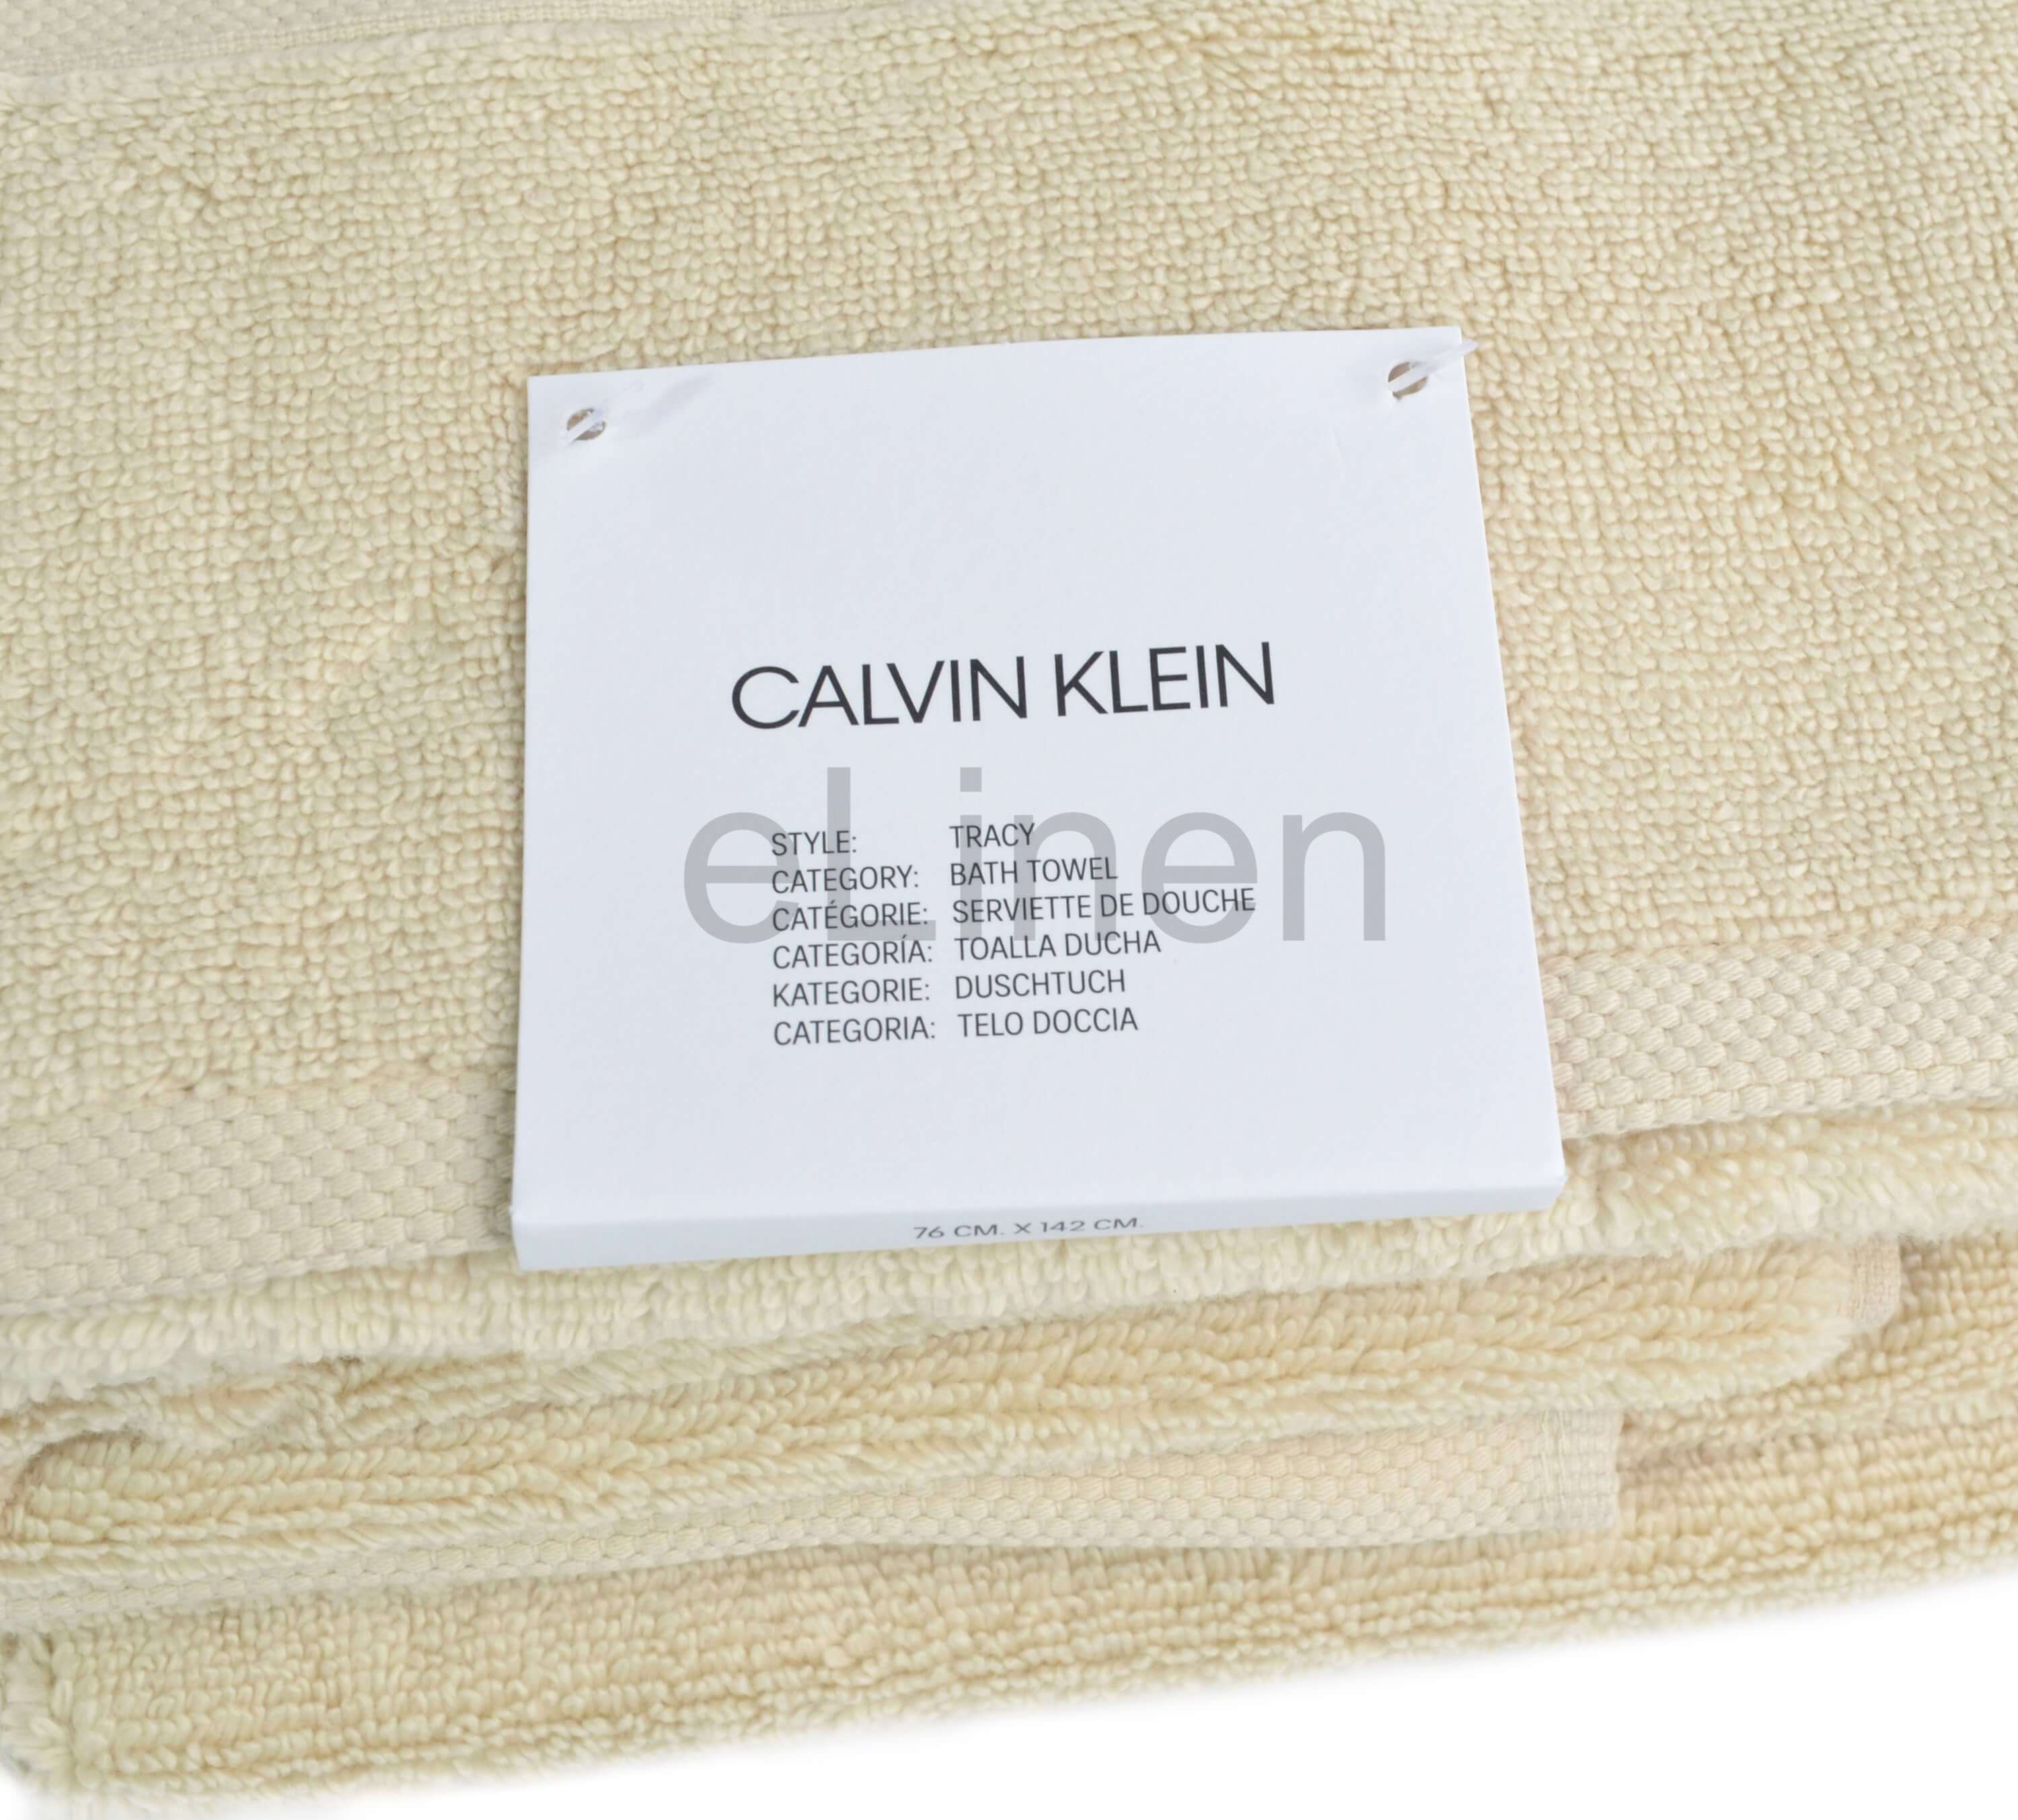 Полотенце Calvin Klein Tracy Beige ☞ Размер: 92 x 183 см